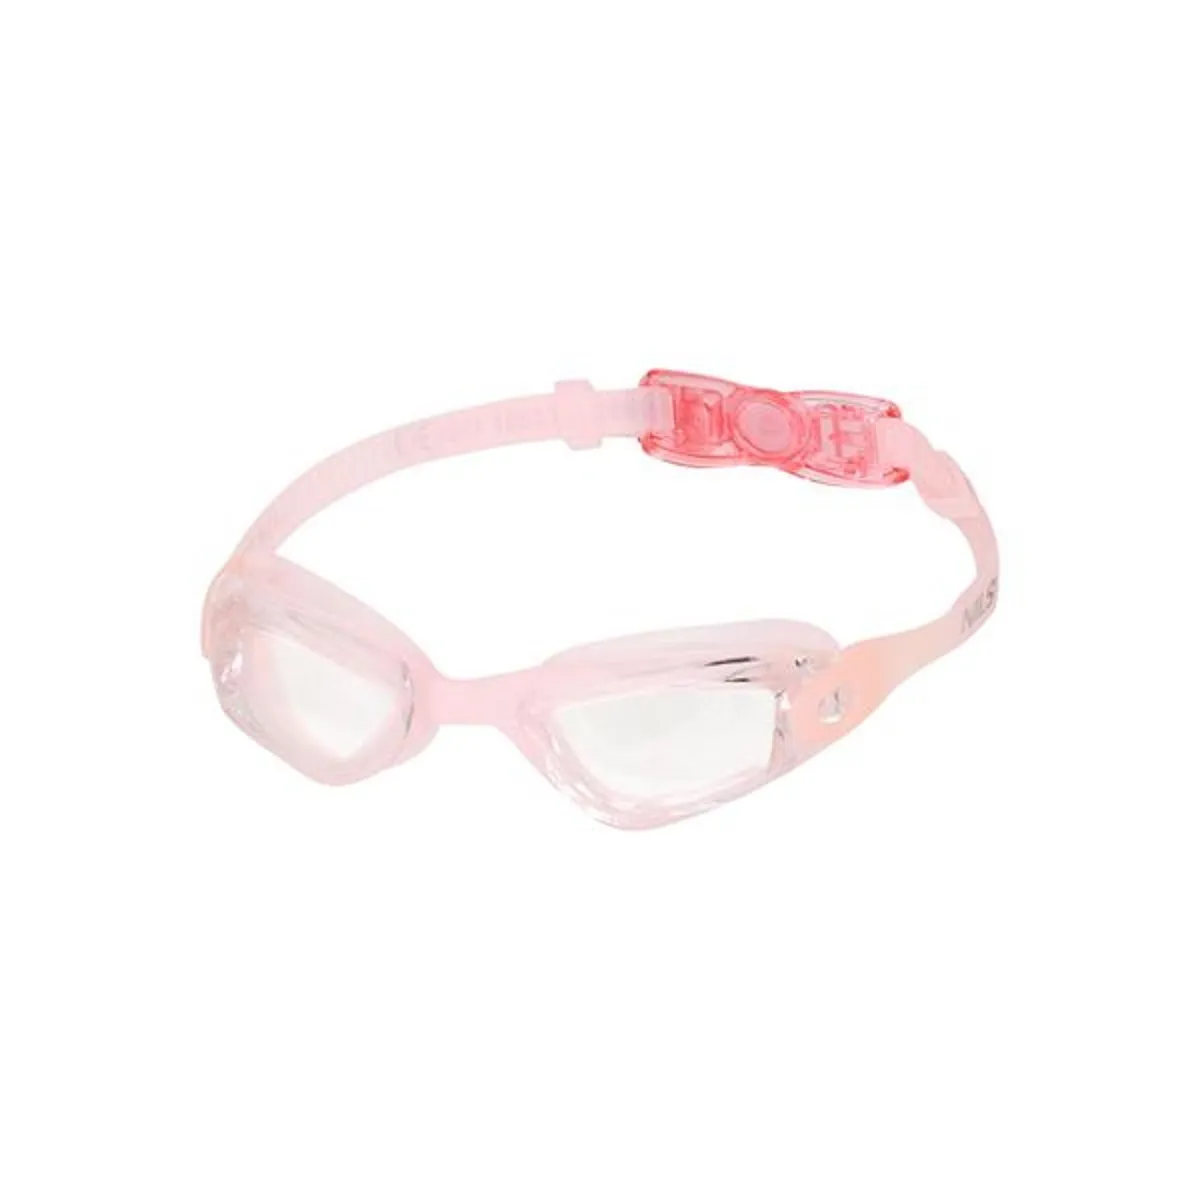 Gafas de natación Nils Aqua junior rosa